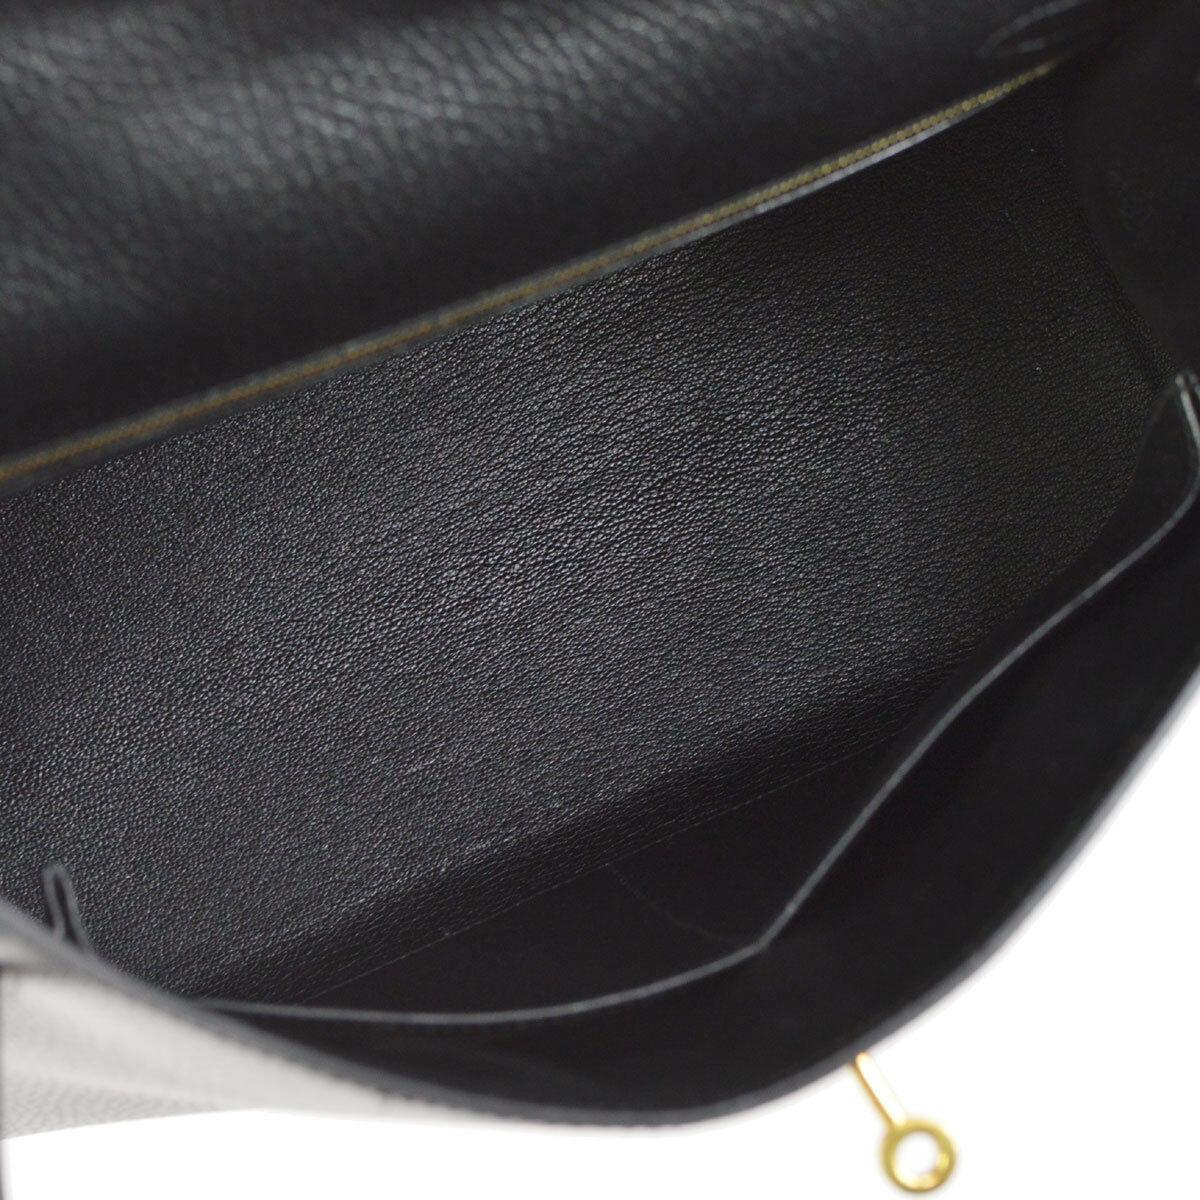 Hermes Kelly 32 Black Leather Gold Top Handle Satchel Shoulder Bag in Box 2